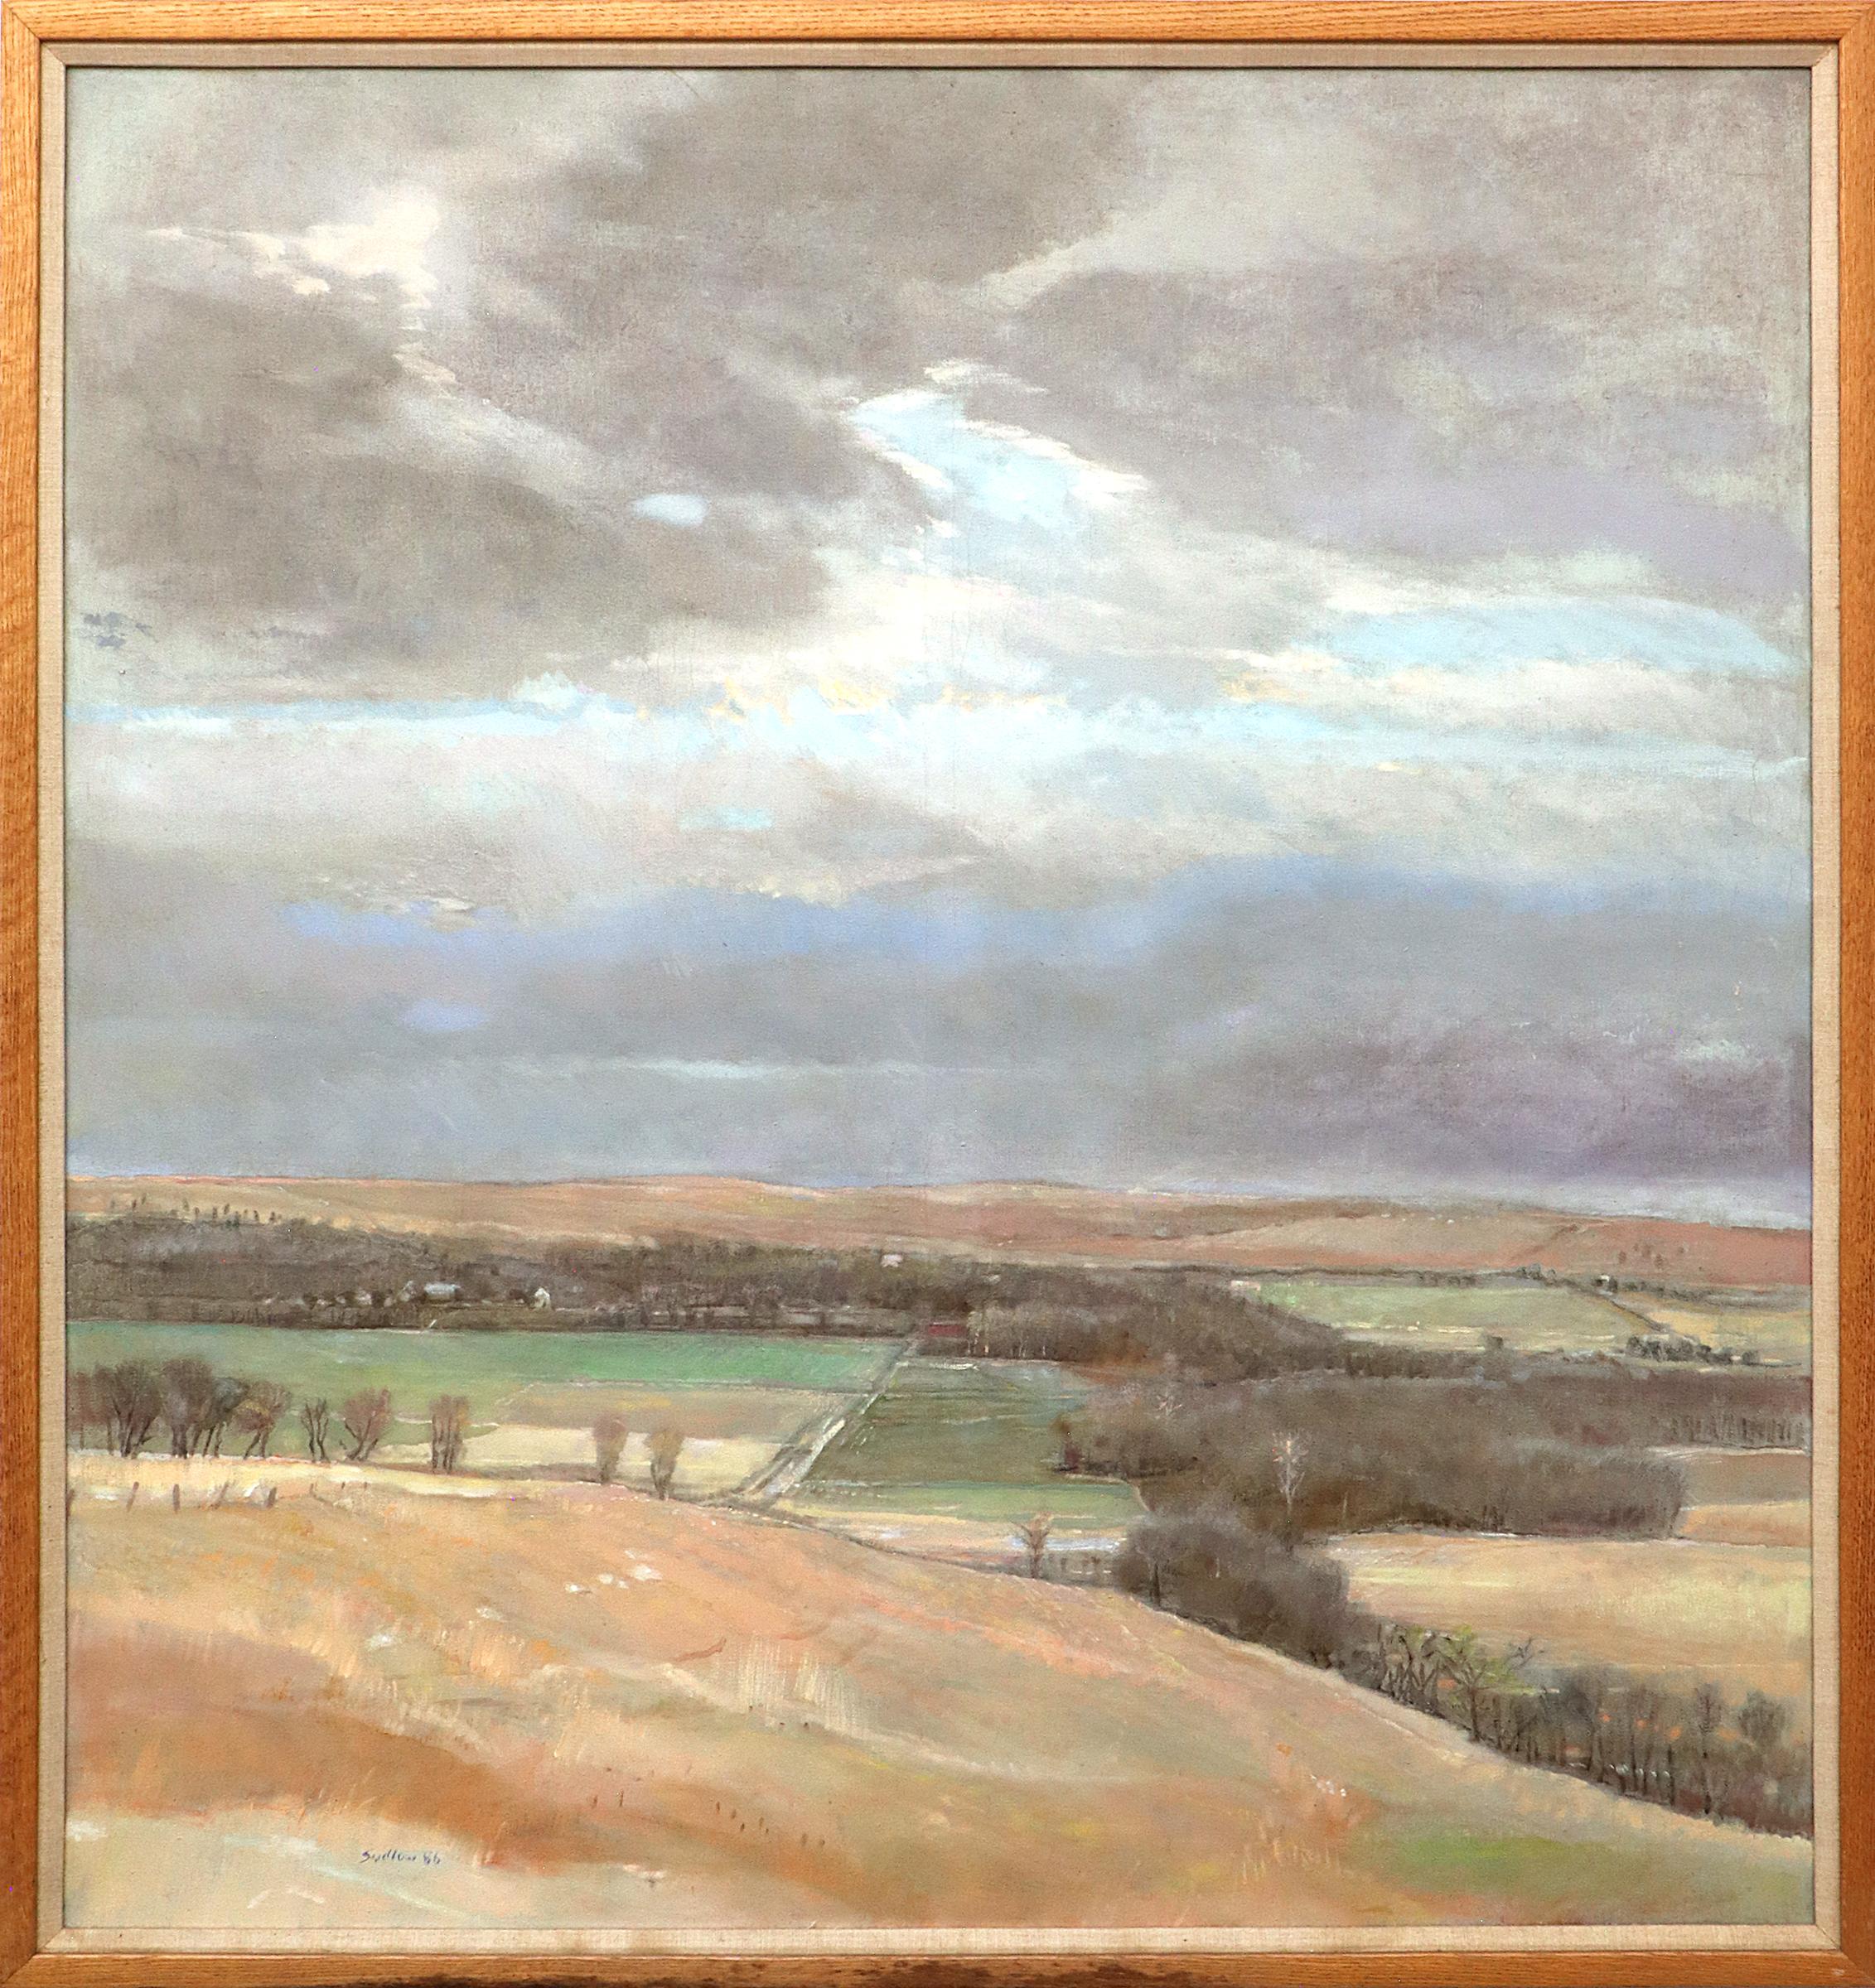 Landscape Painting Robert N. Sudlow - Pioneer Bluffs au printemps Peinture de paysage post-impressionniste Kansas Ciel orageux